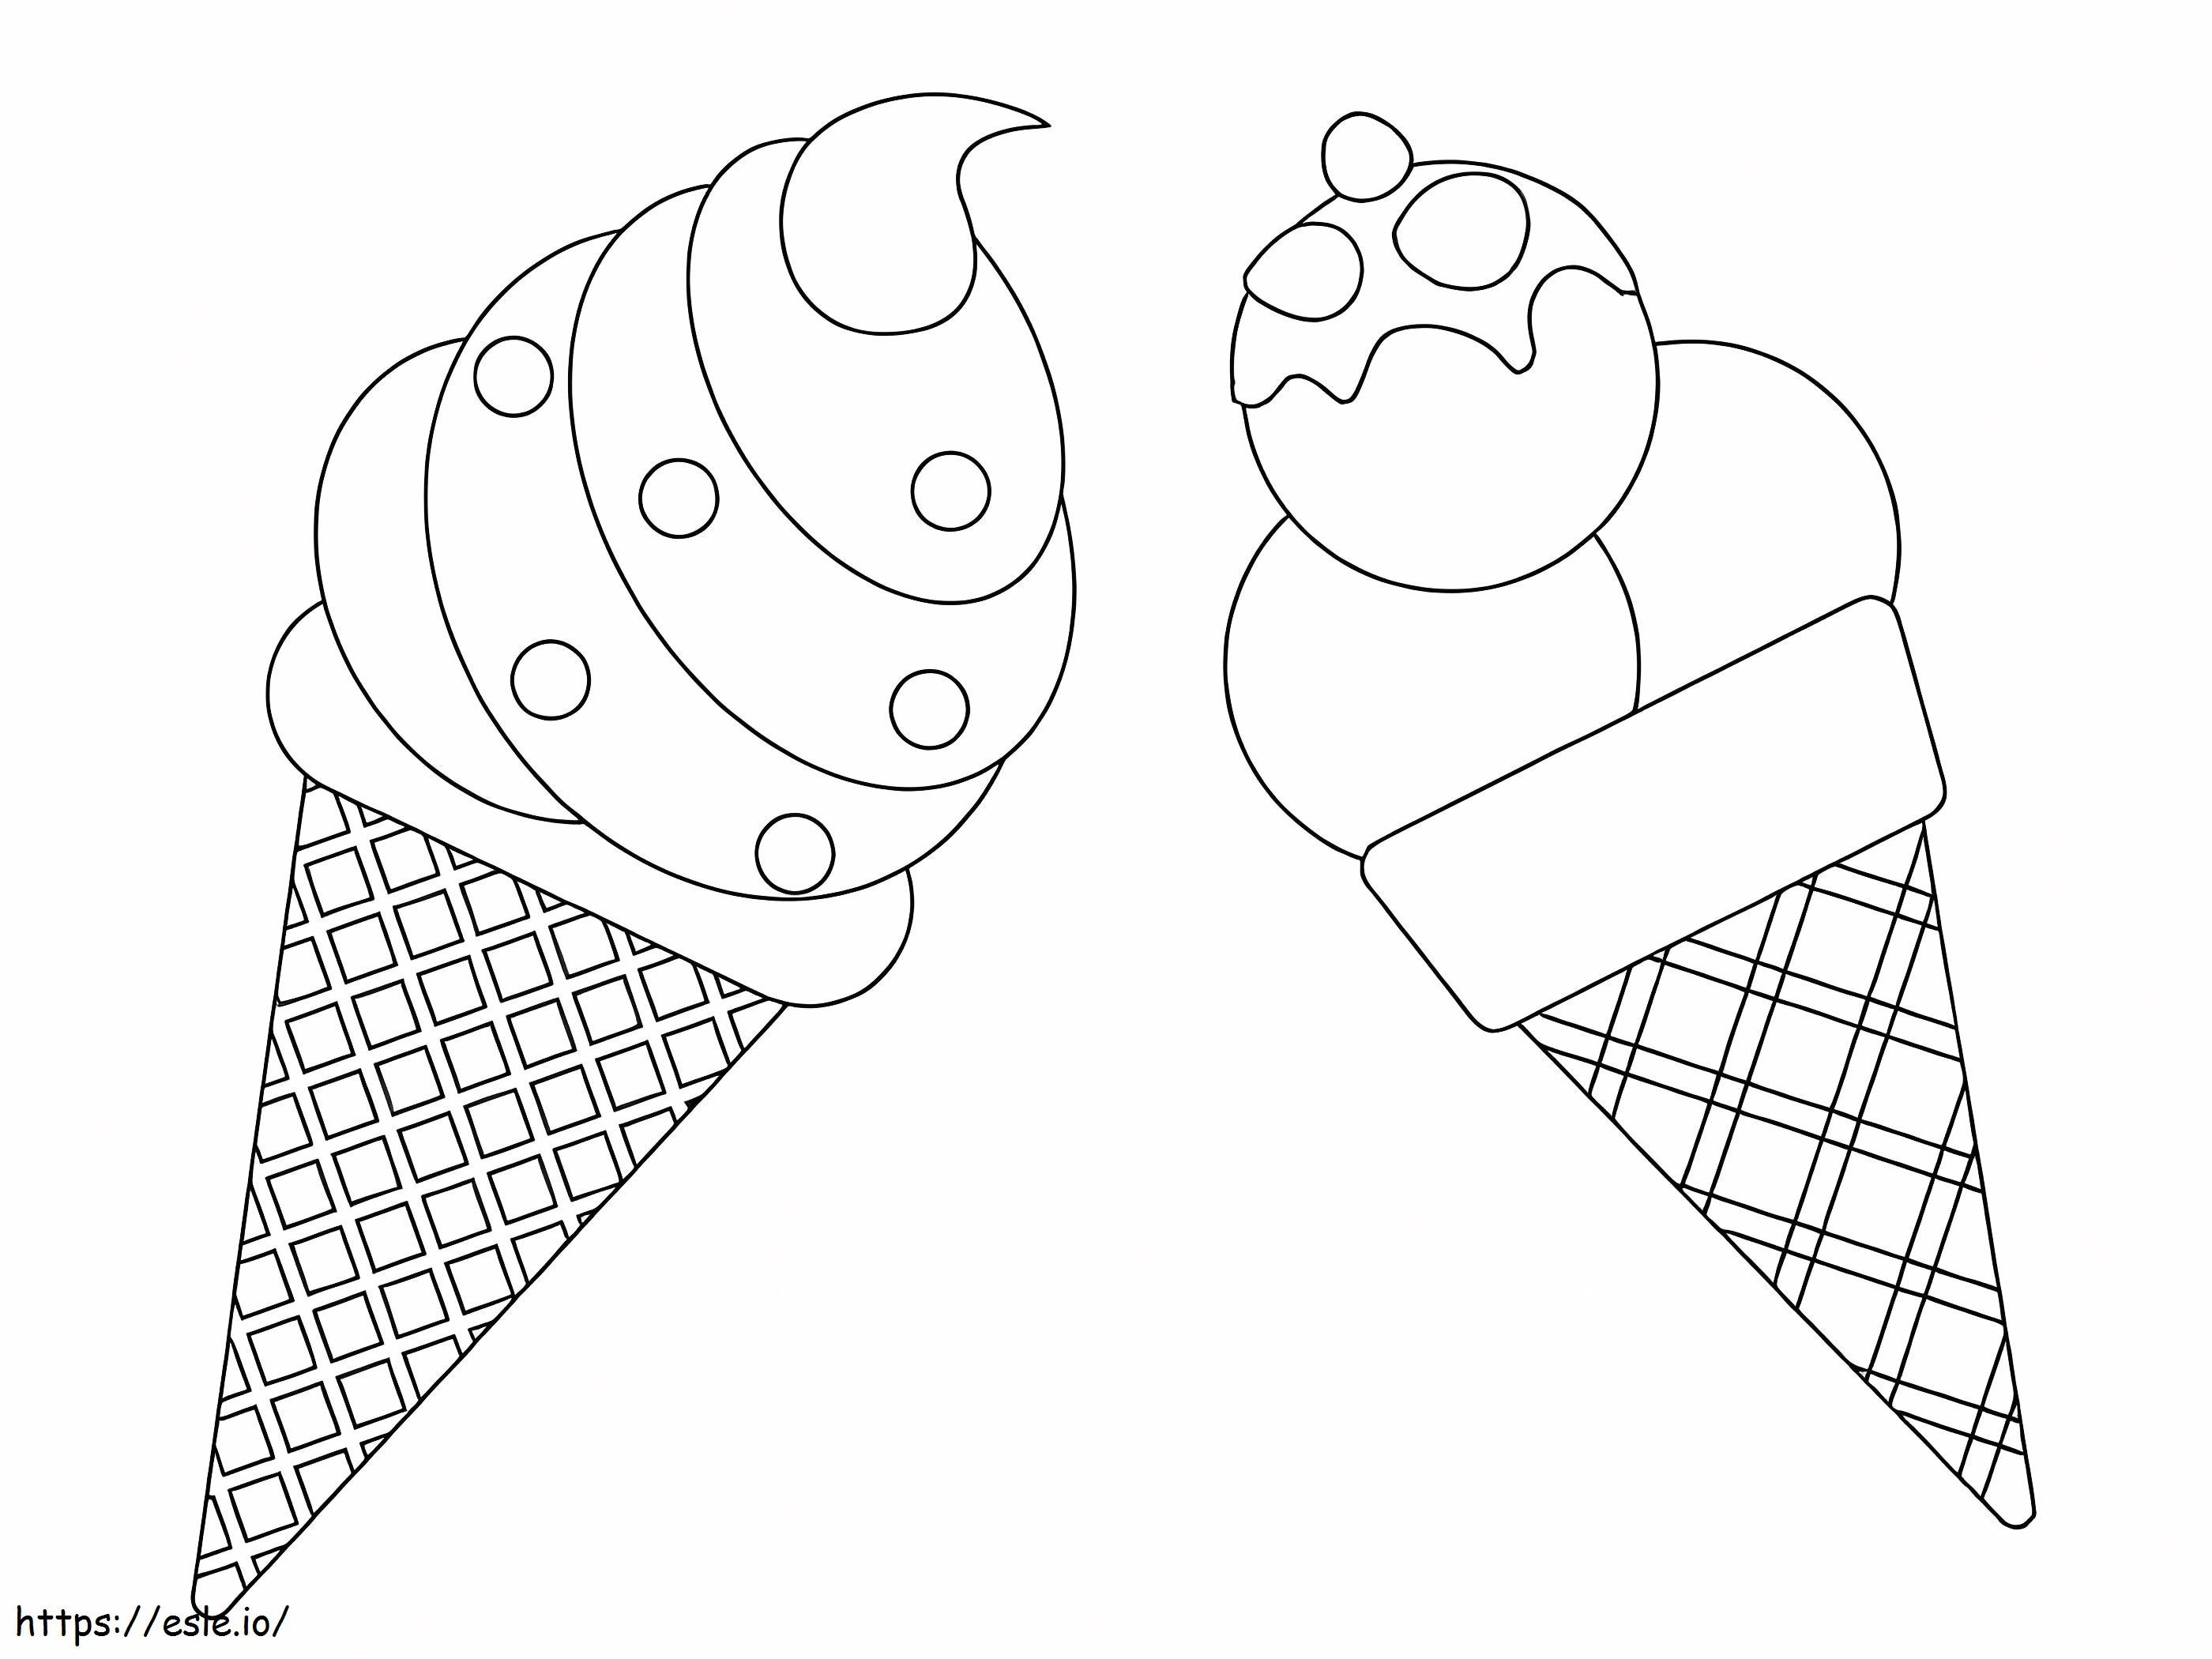 İki Dondurma boyama